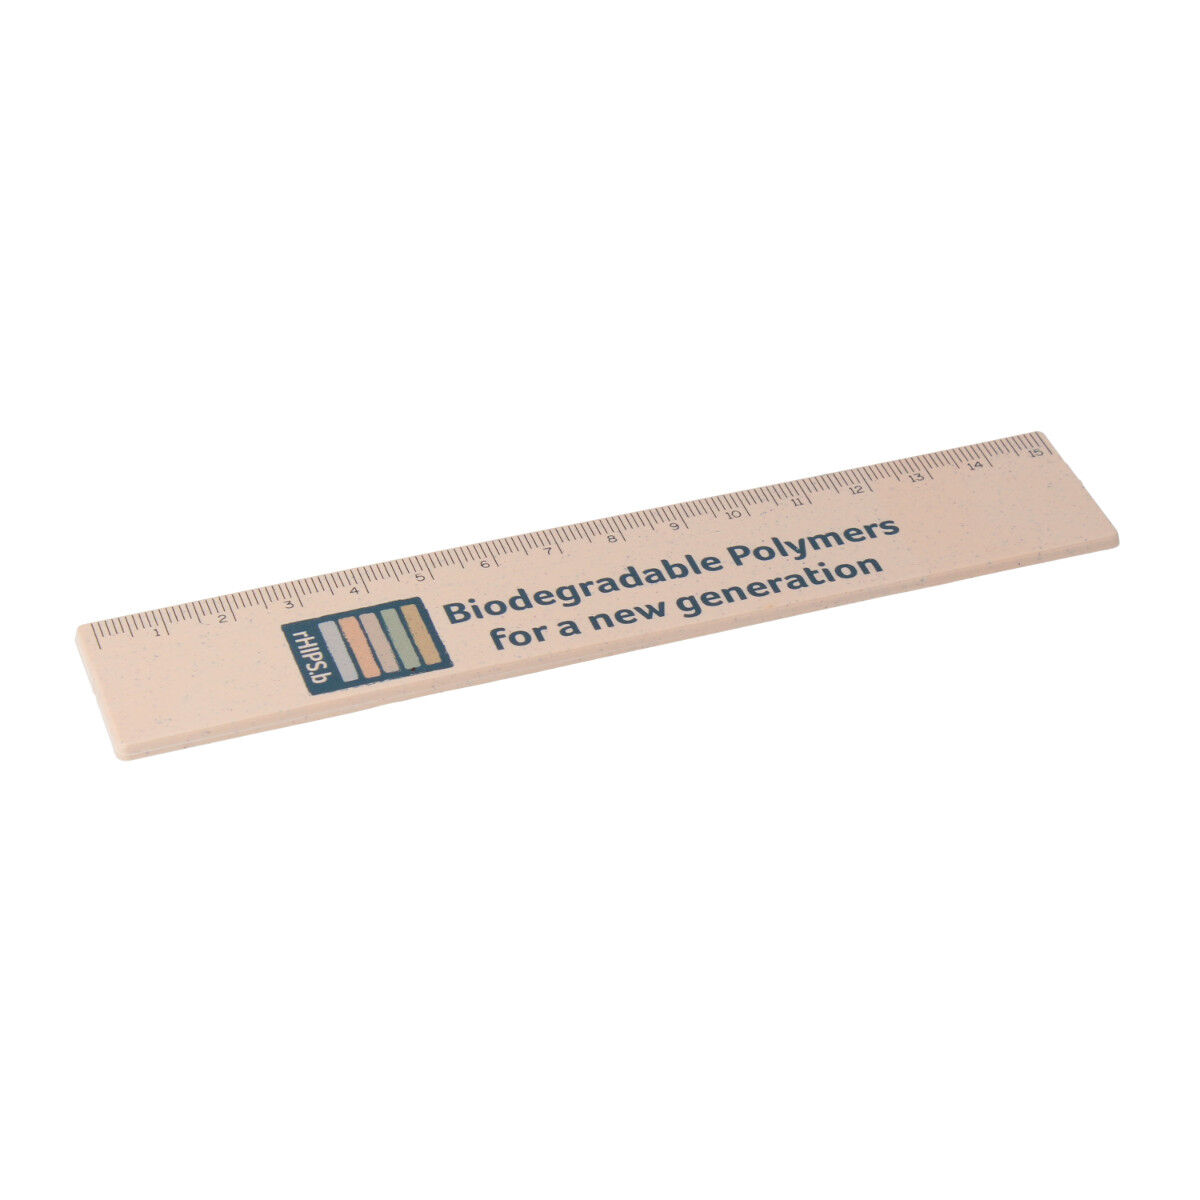 Recycled Plastic rHIPS 15cm Ruler (sample branding)